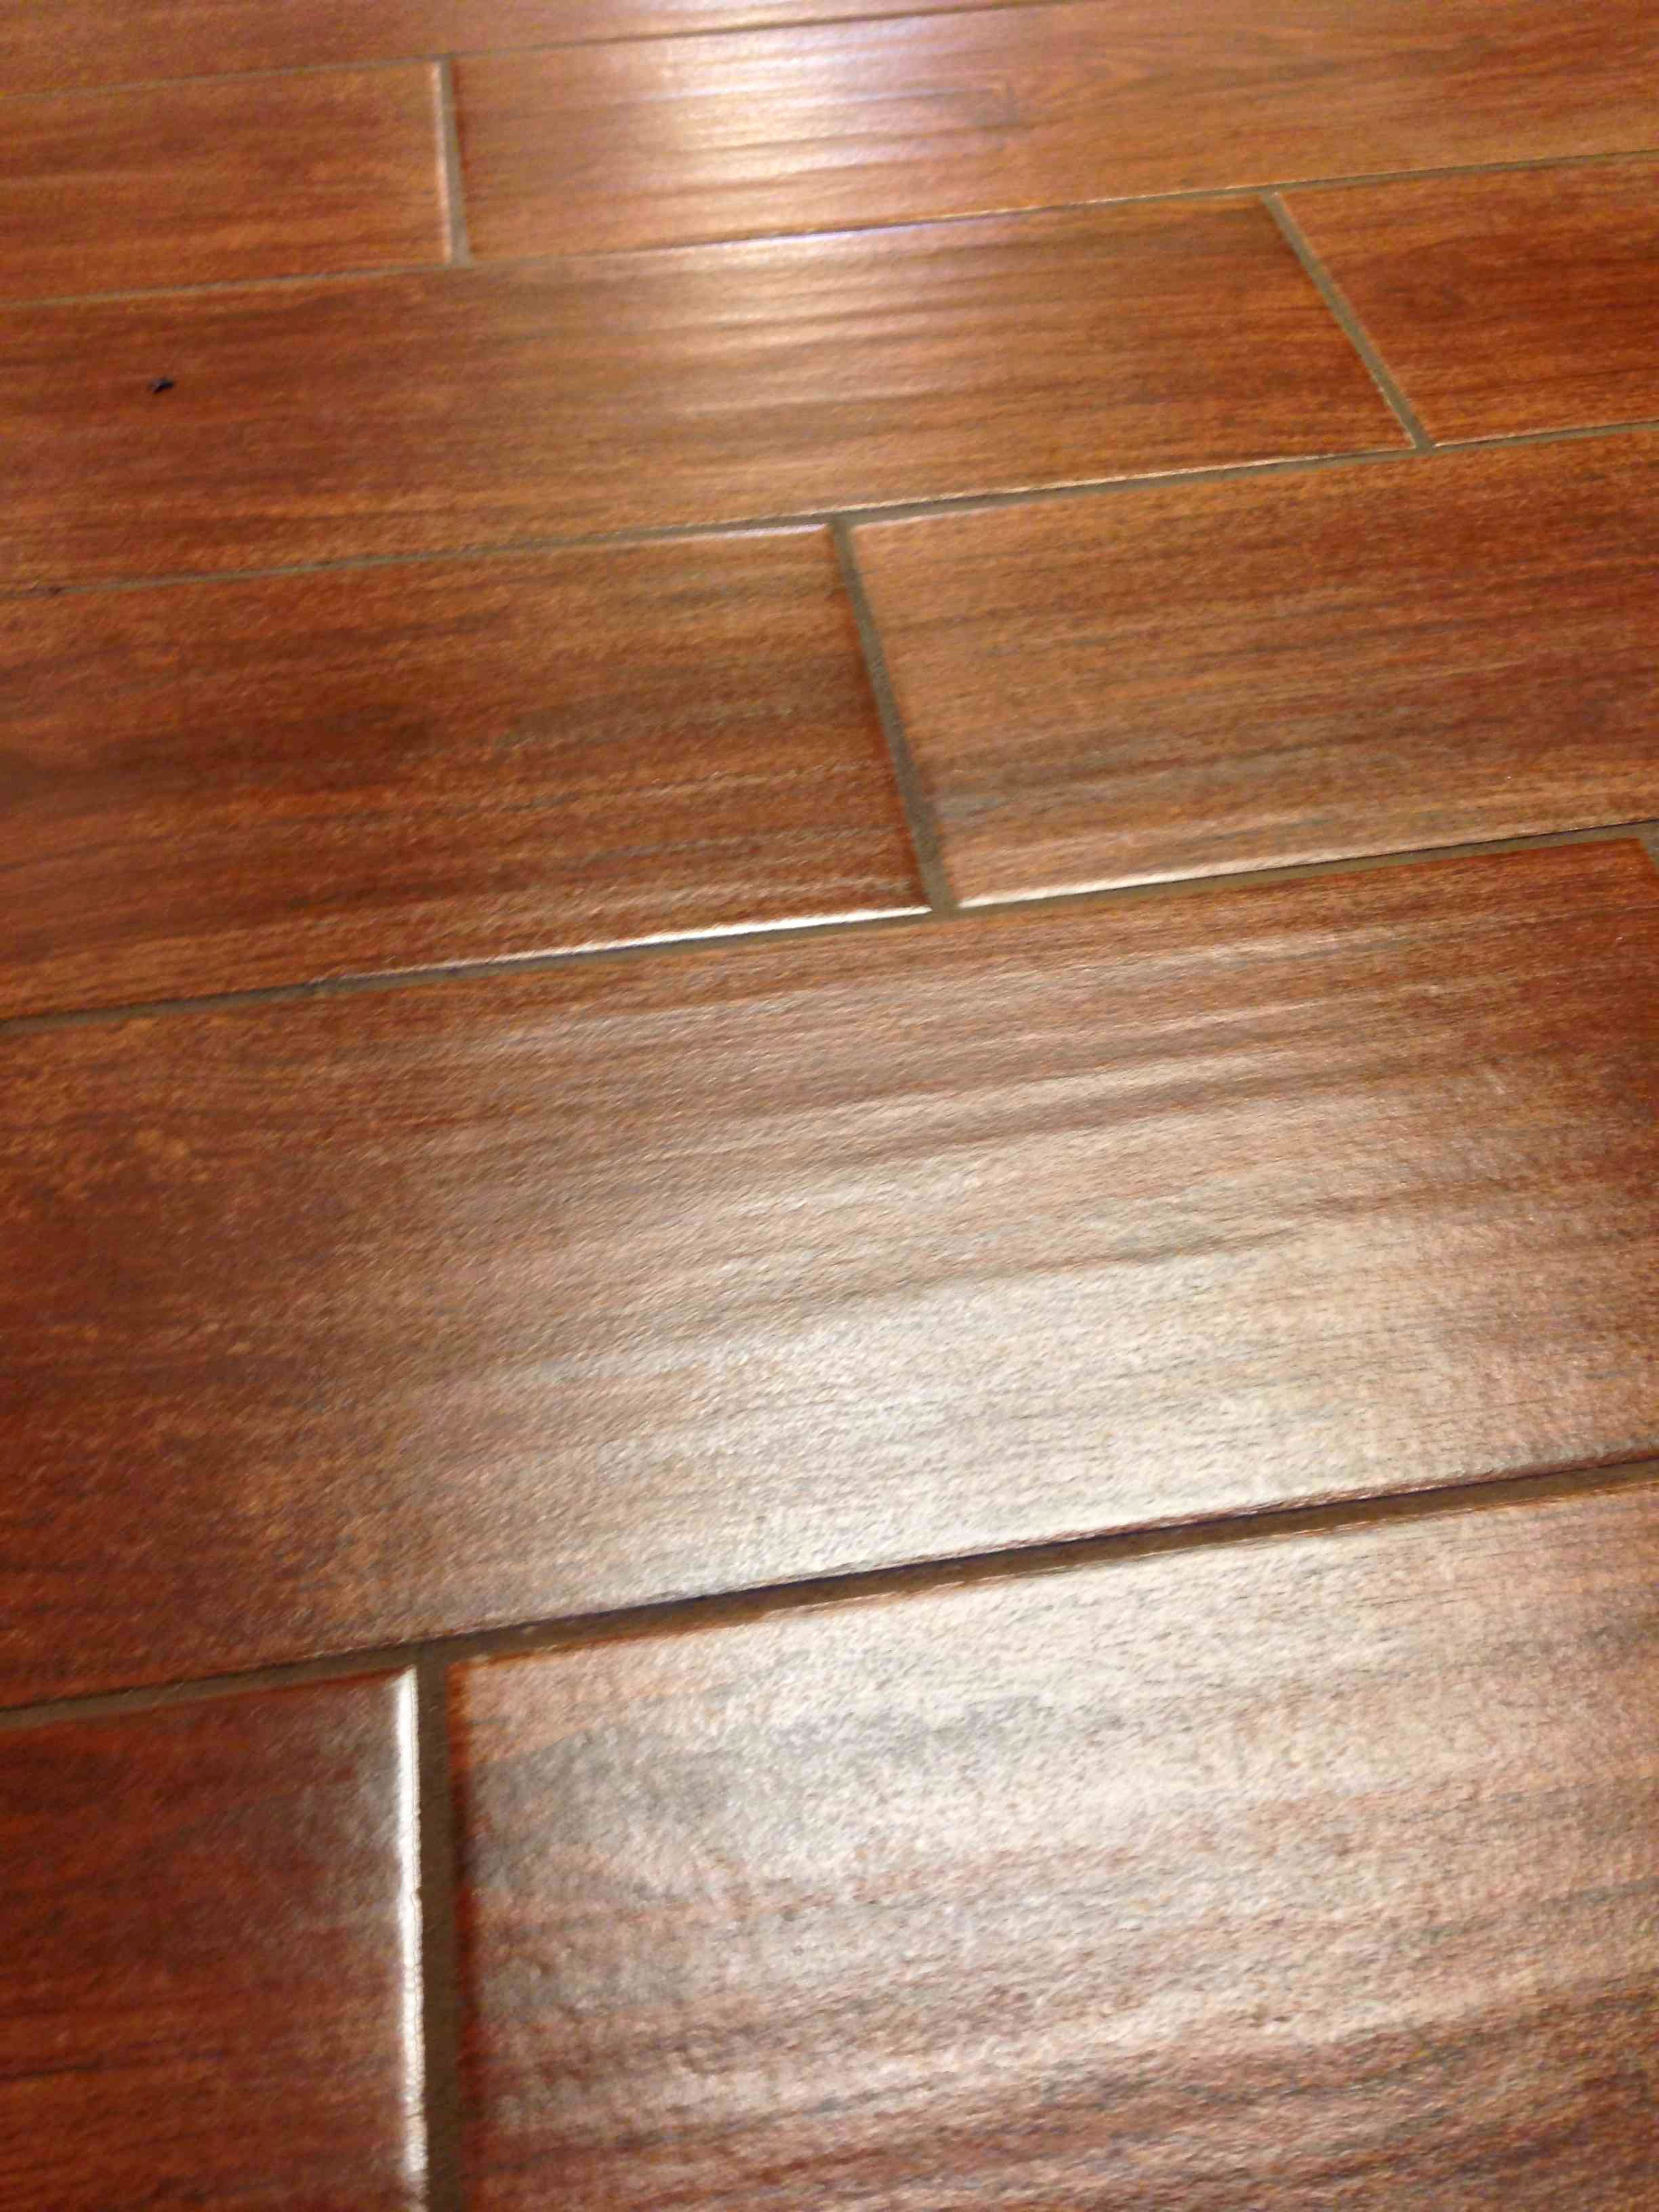 20 Lovable Hardwood Floor Hallway 2024 free download hardwood floor hallway of floor tile that looks like wood planks floor plan ideas inside harwood flooring best tile that looks like hardwood floors elegant i pinimg 736x 0d 7b